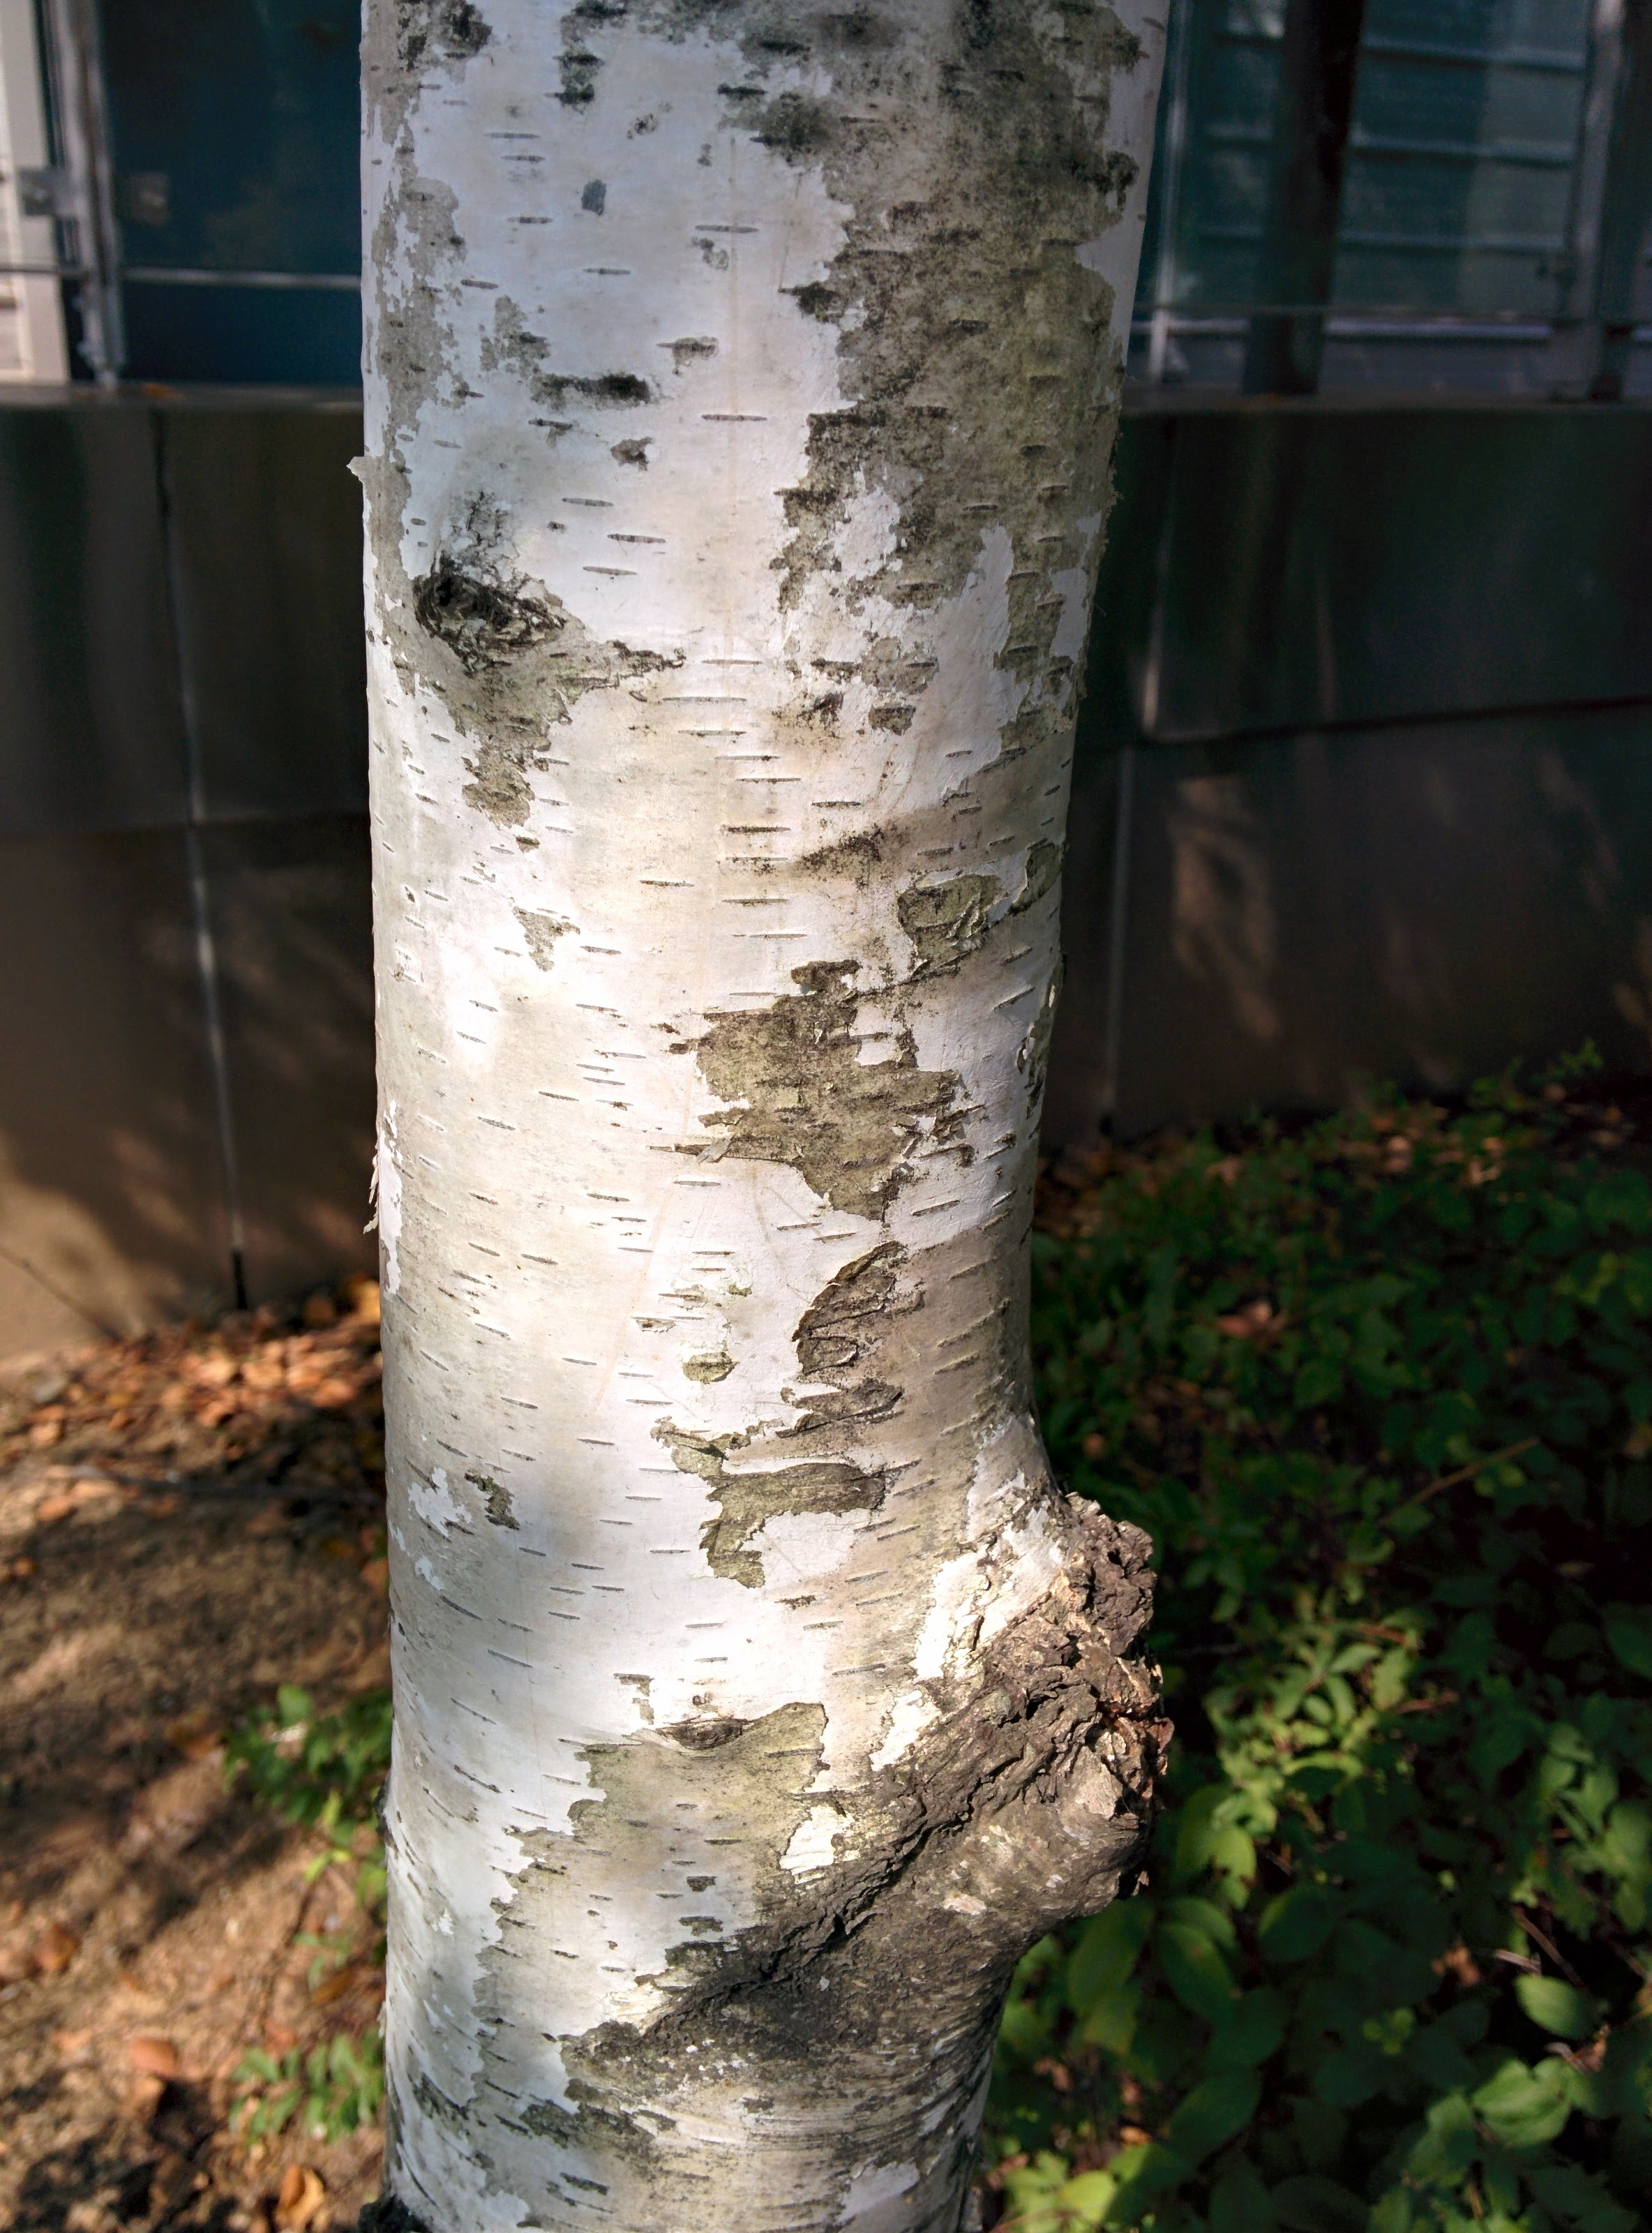 IMG_20151007_105023.jpg 줄기가 흰색인 자작나무 열매와 줄기